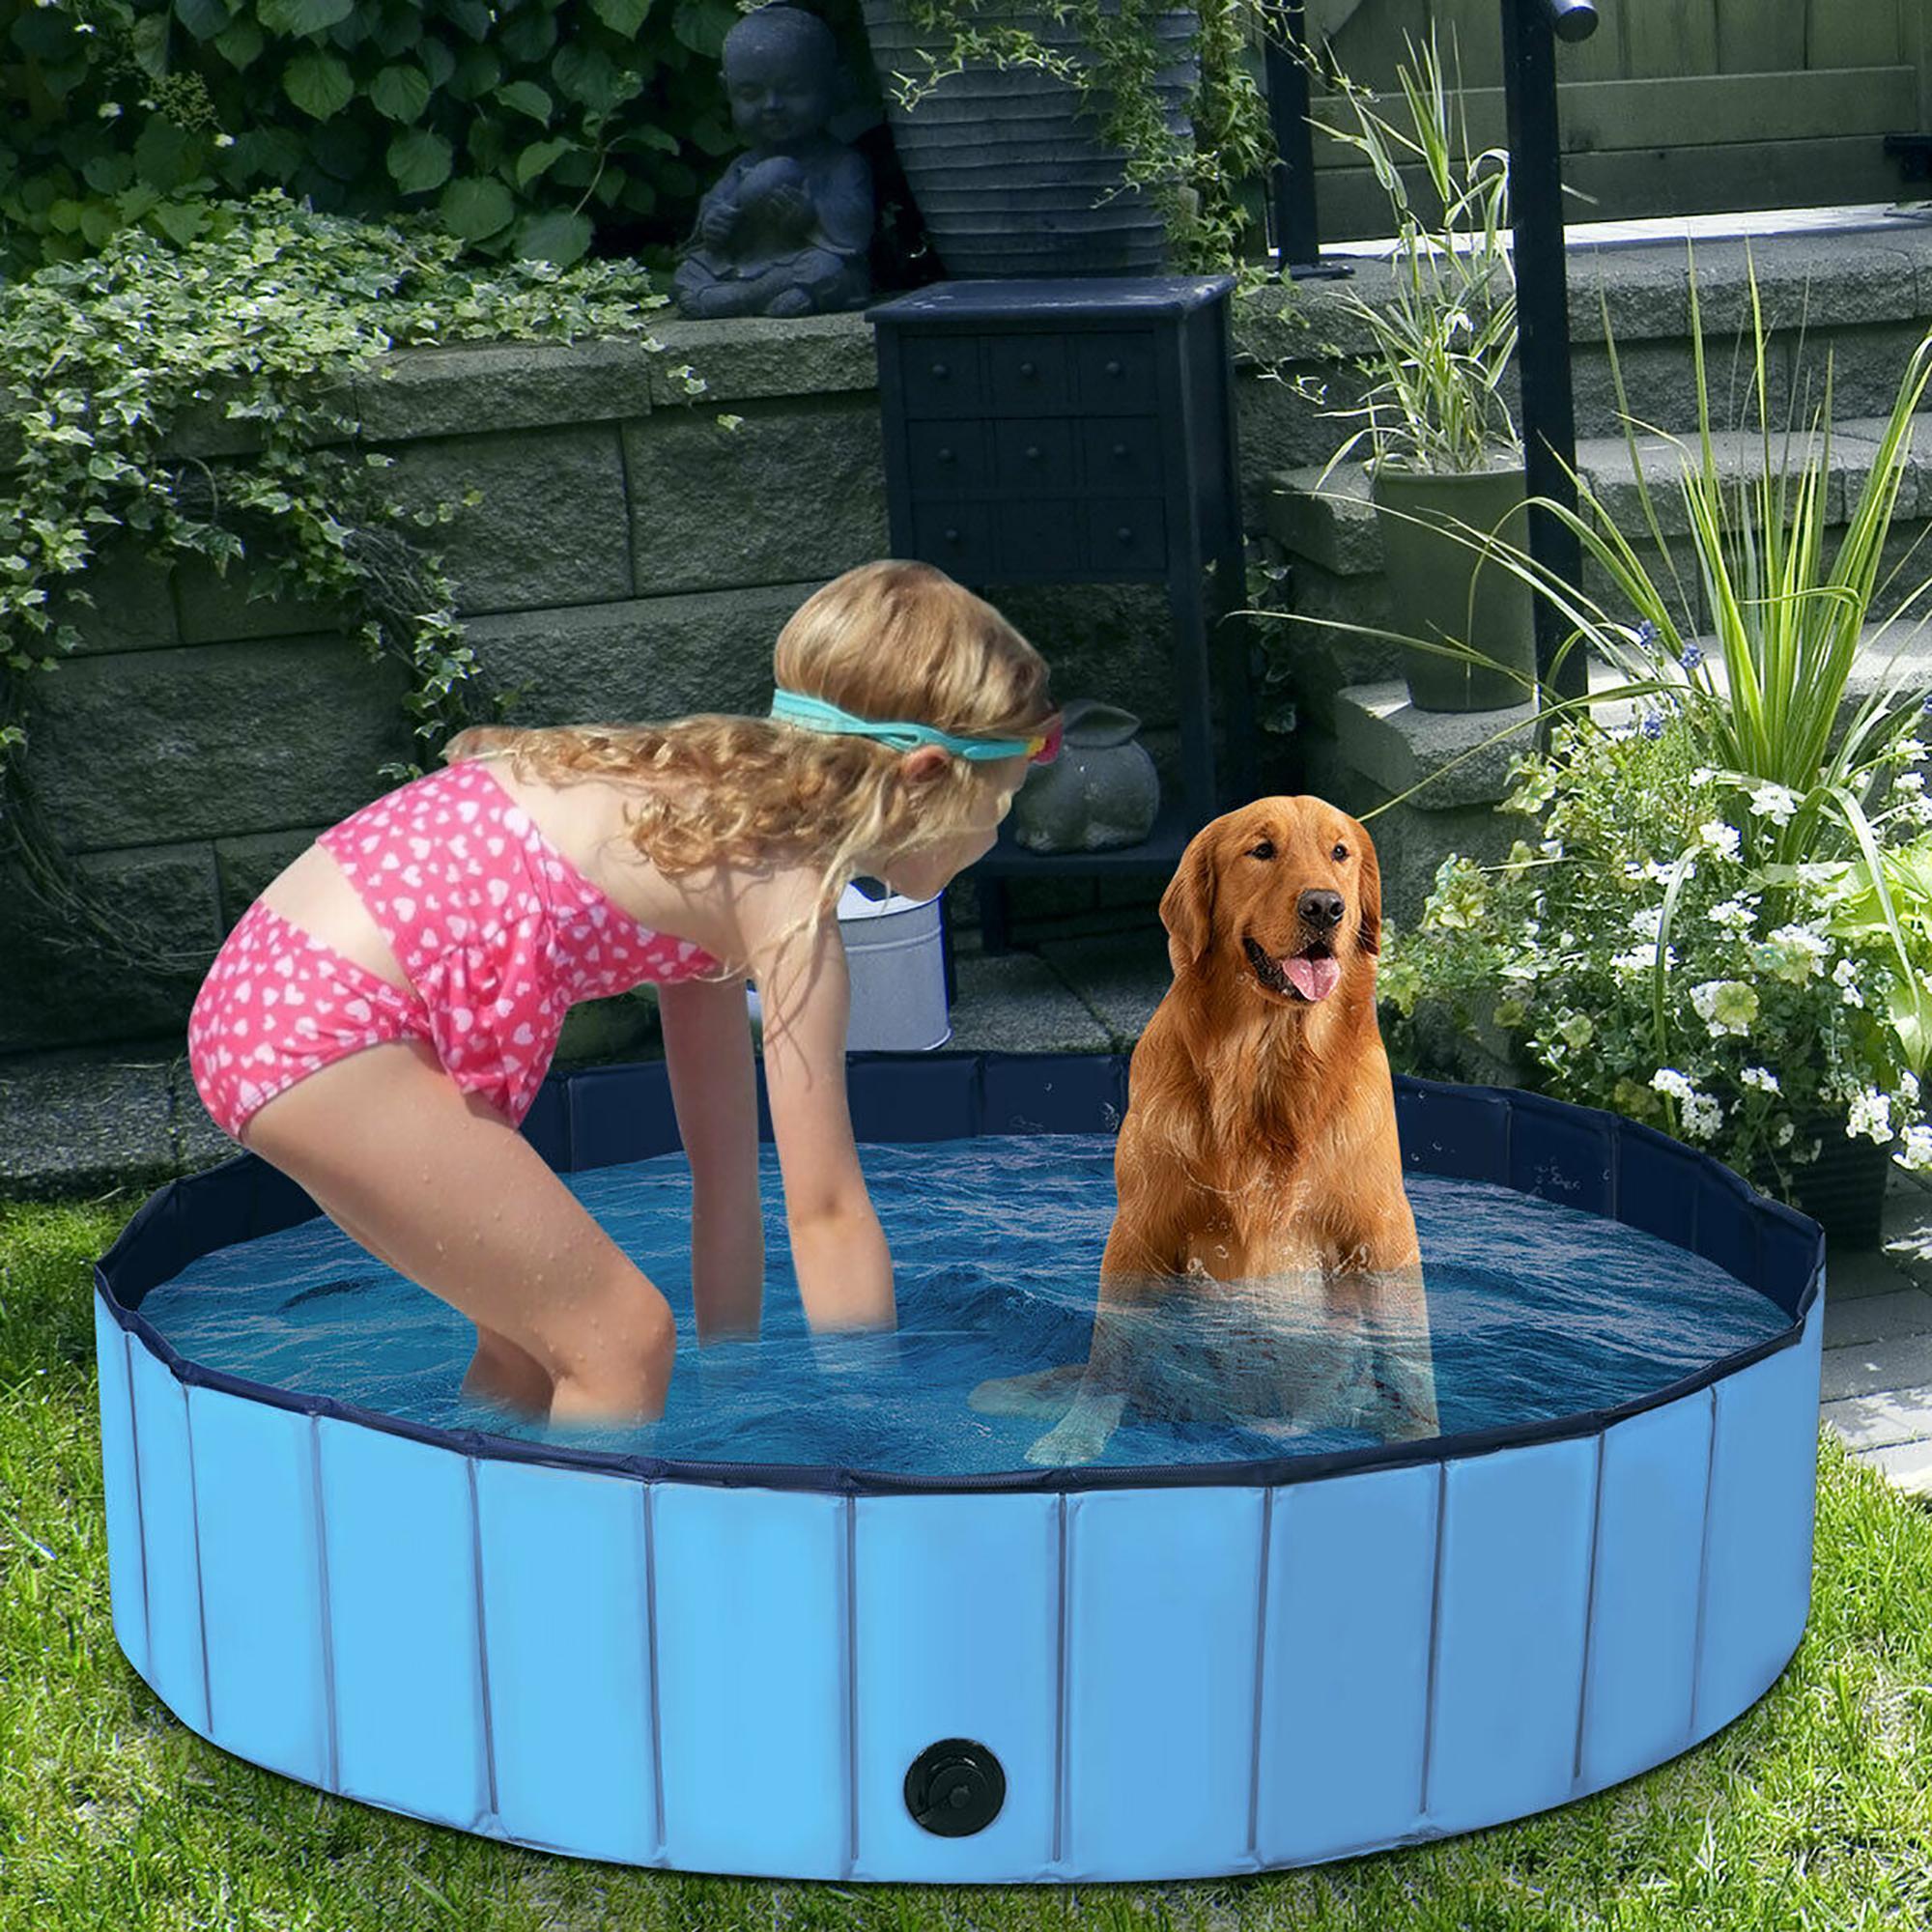 55'' Foldable Dog Pet Pool Kiddie Bathing Tub Indoor Outdoor Leakproof Portable alternate image